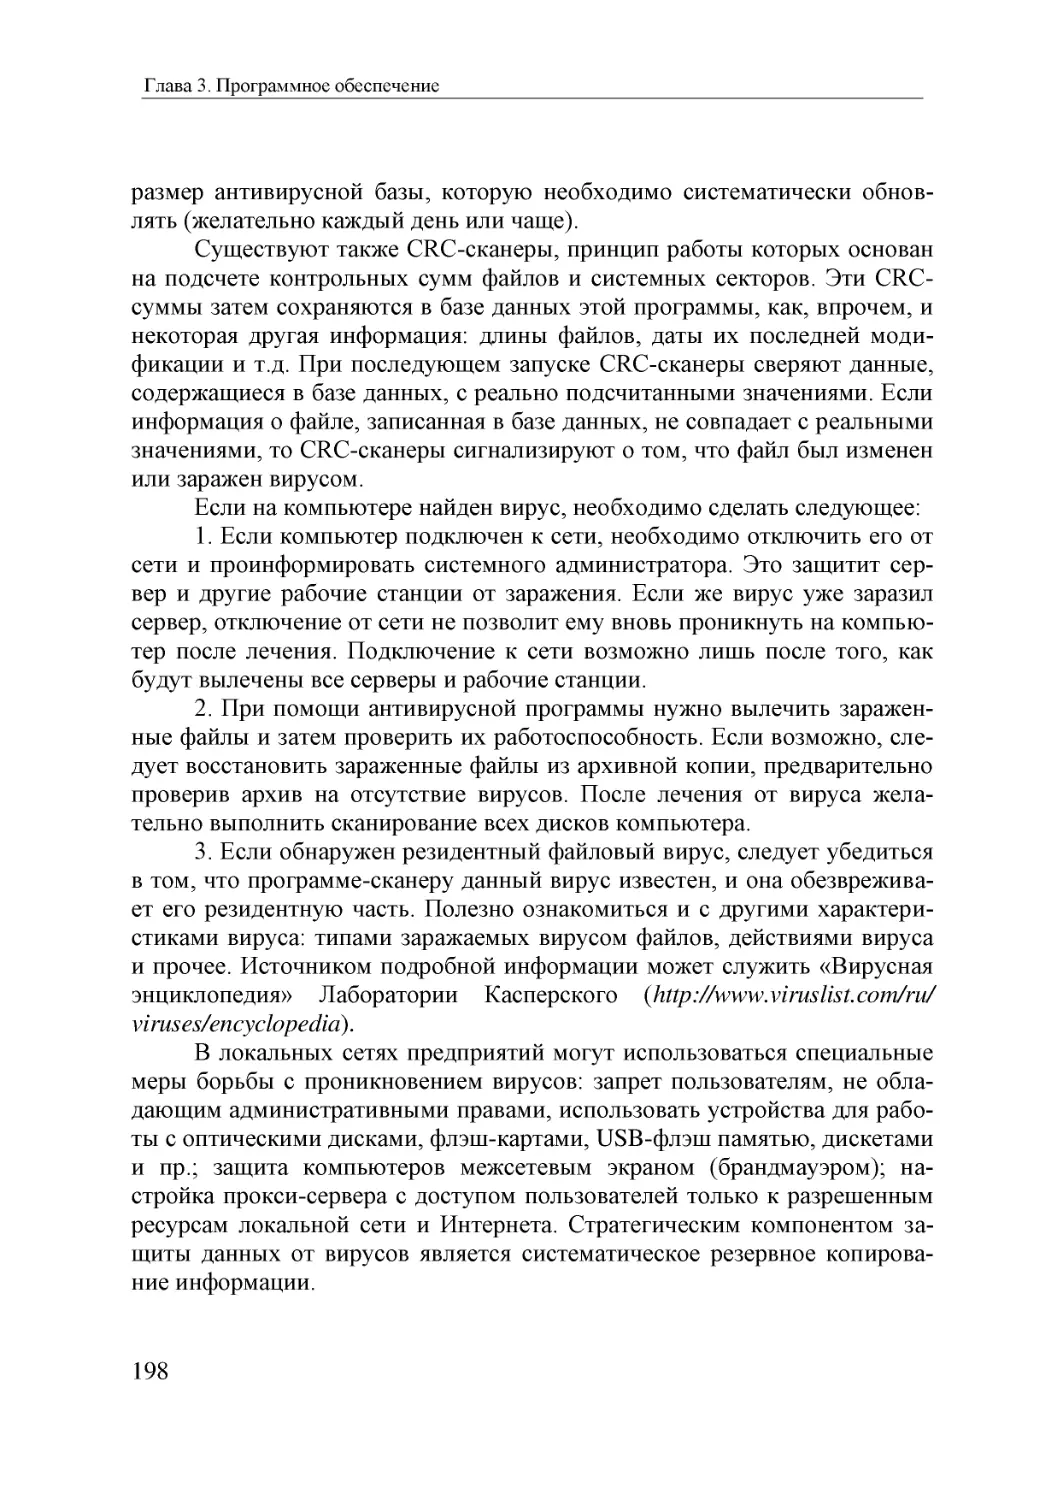 Informatika_Uchebnik_dlya_vuzov_2010 198